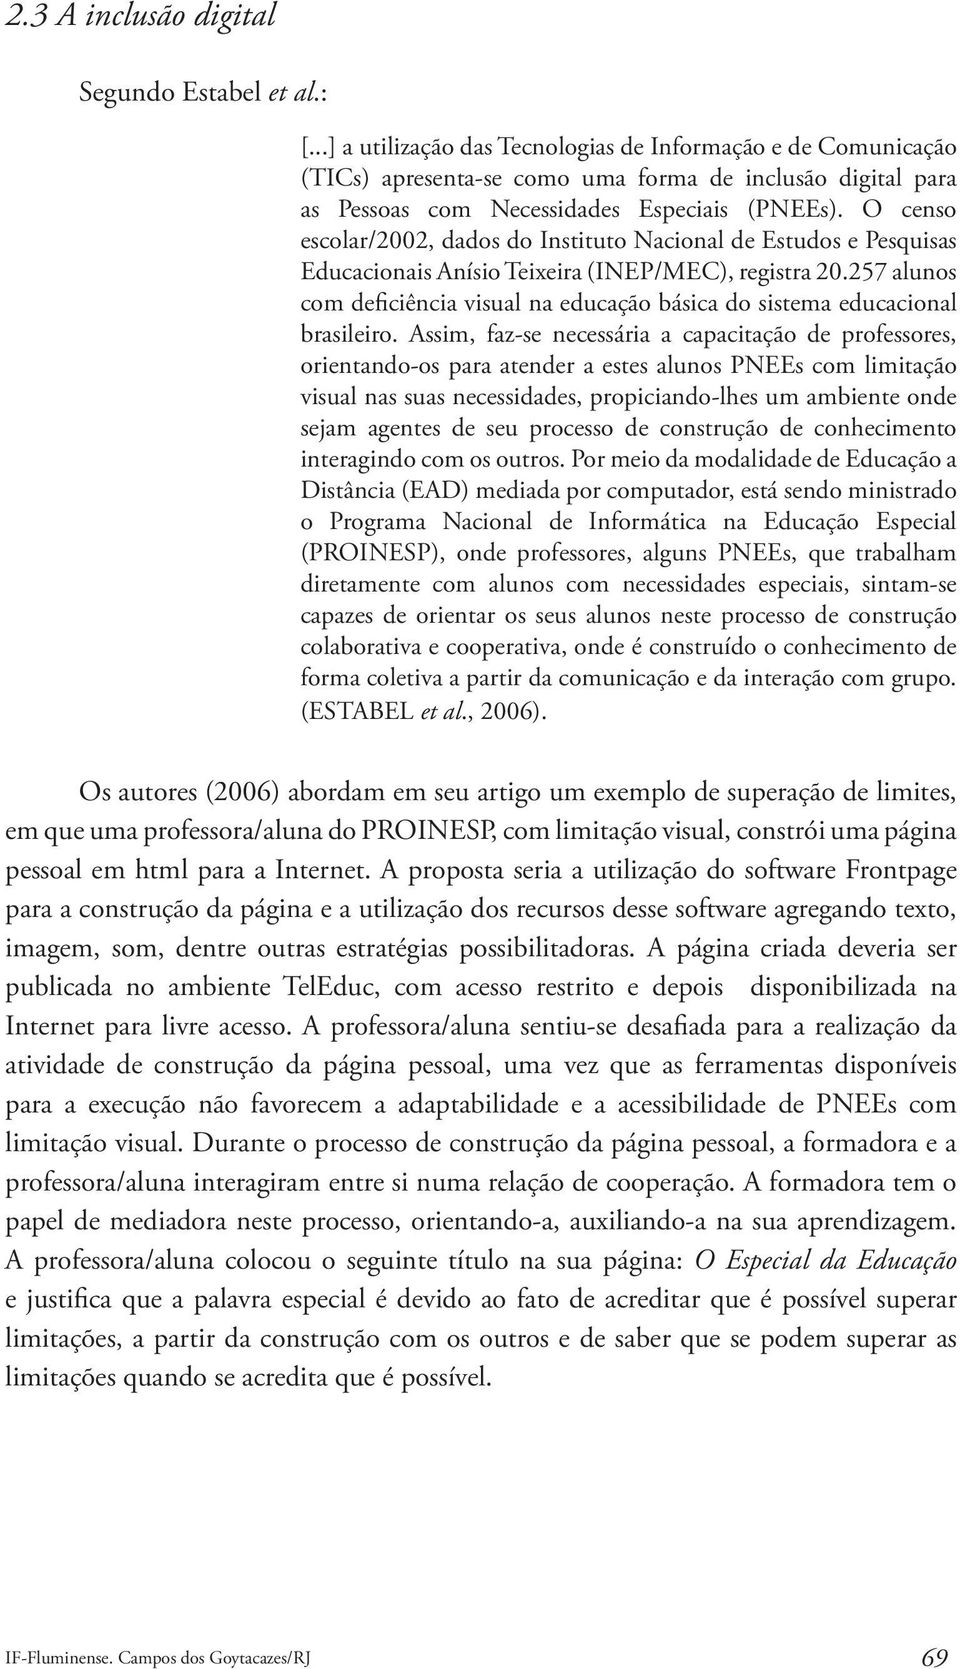 O censo escolar/2002, dados do Instituto Nacional de Estudos e Pesquisas Educacionais Anísio Teixeira (INEP/MEC), registra 20.